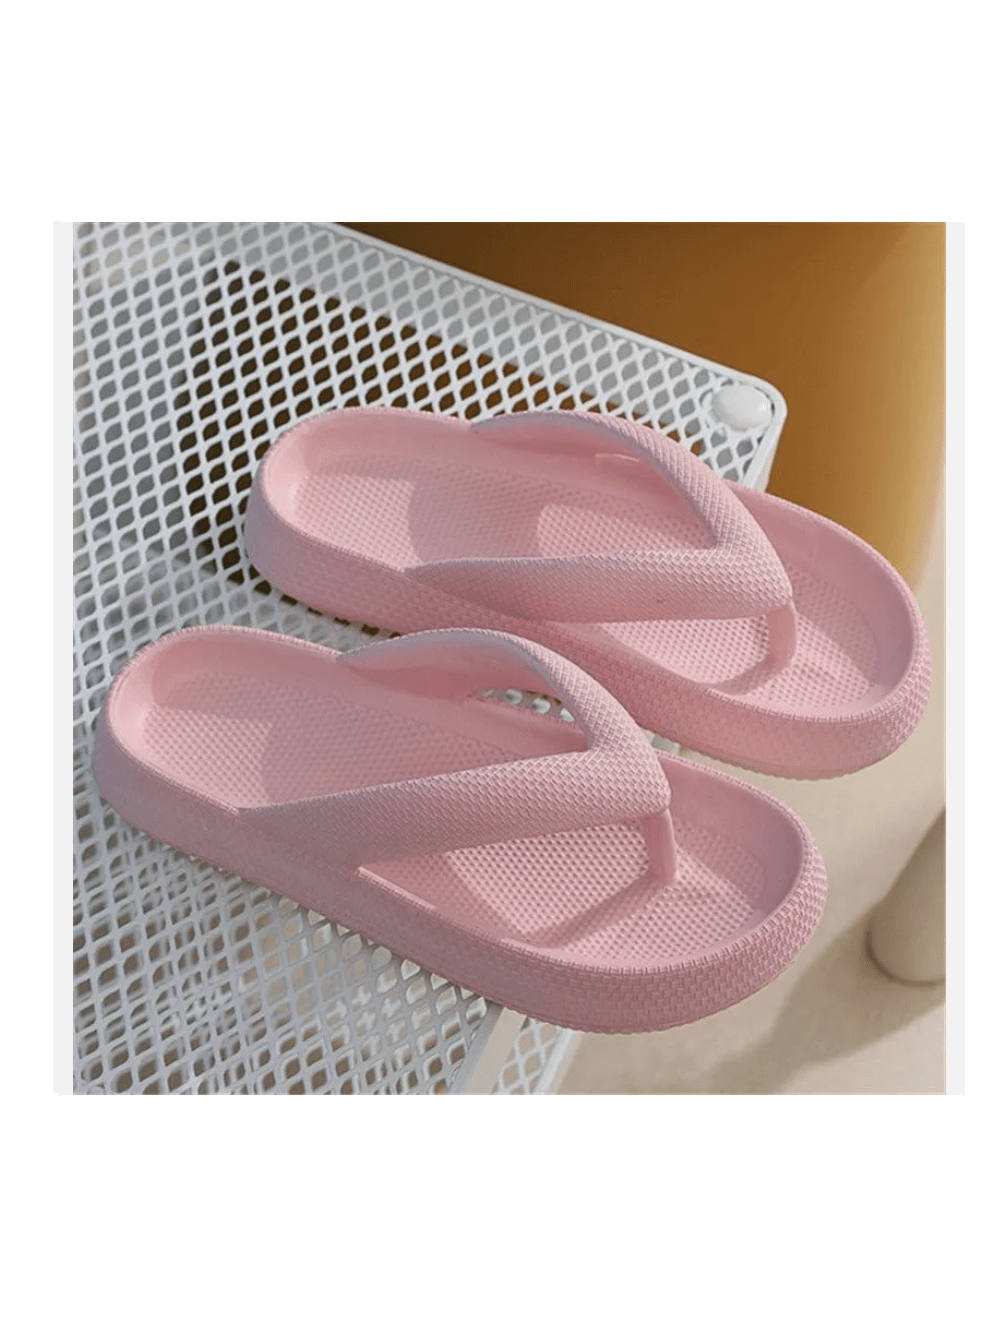 Womens Men Thick Platform Thong Flops Sandals Beach Comfort EVA Slipper Shoes-Pink-2